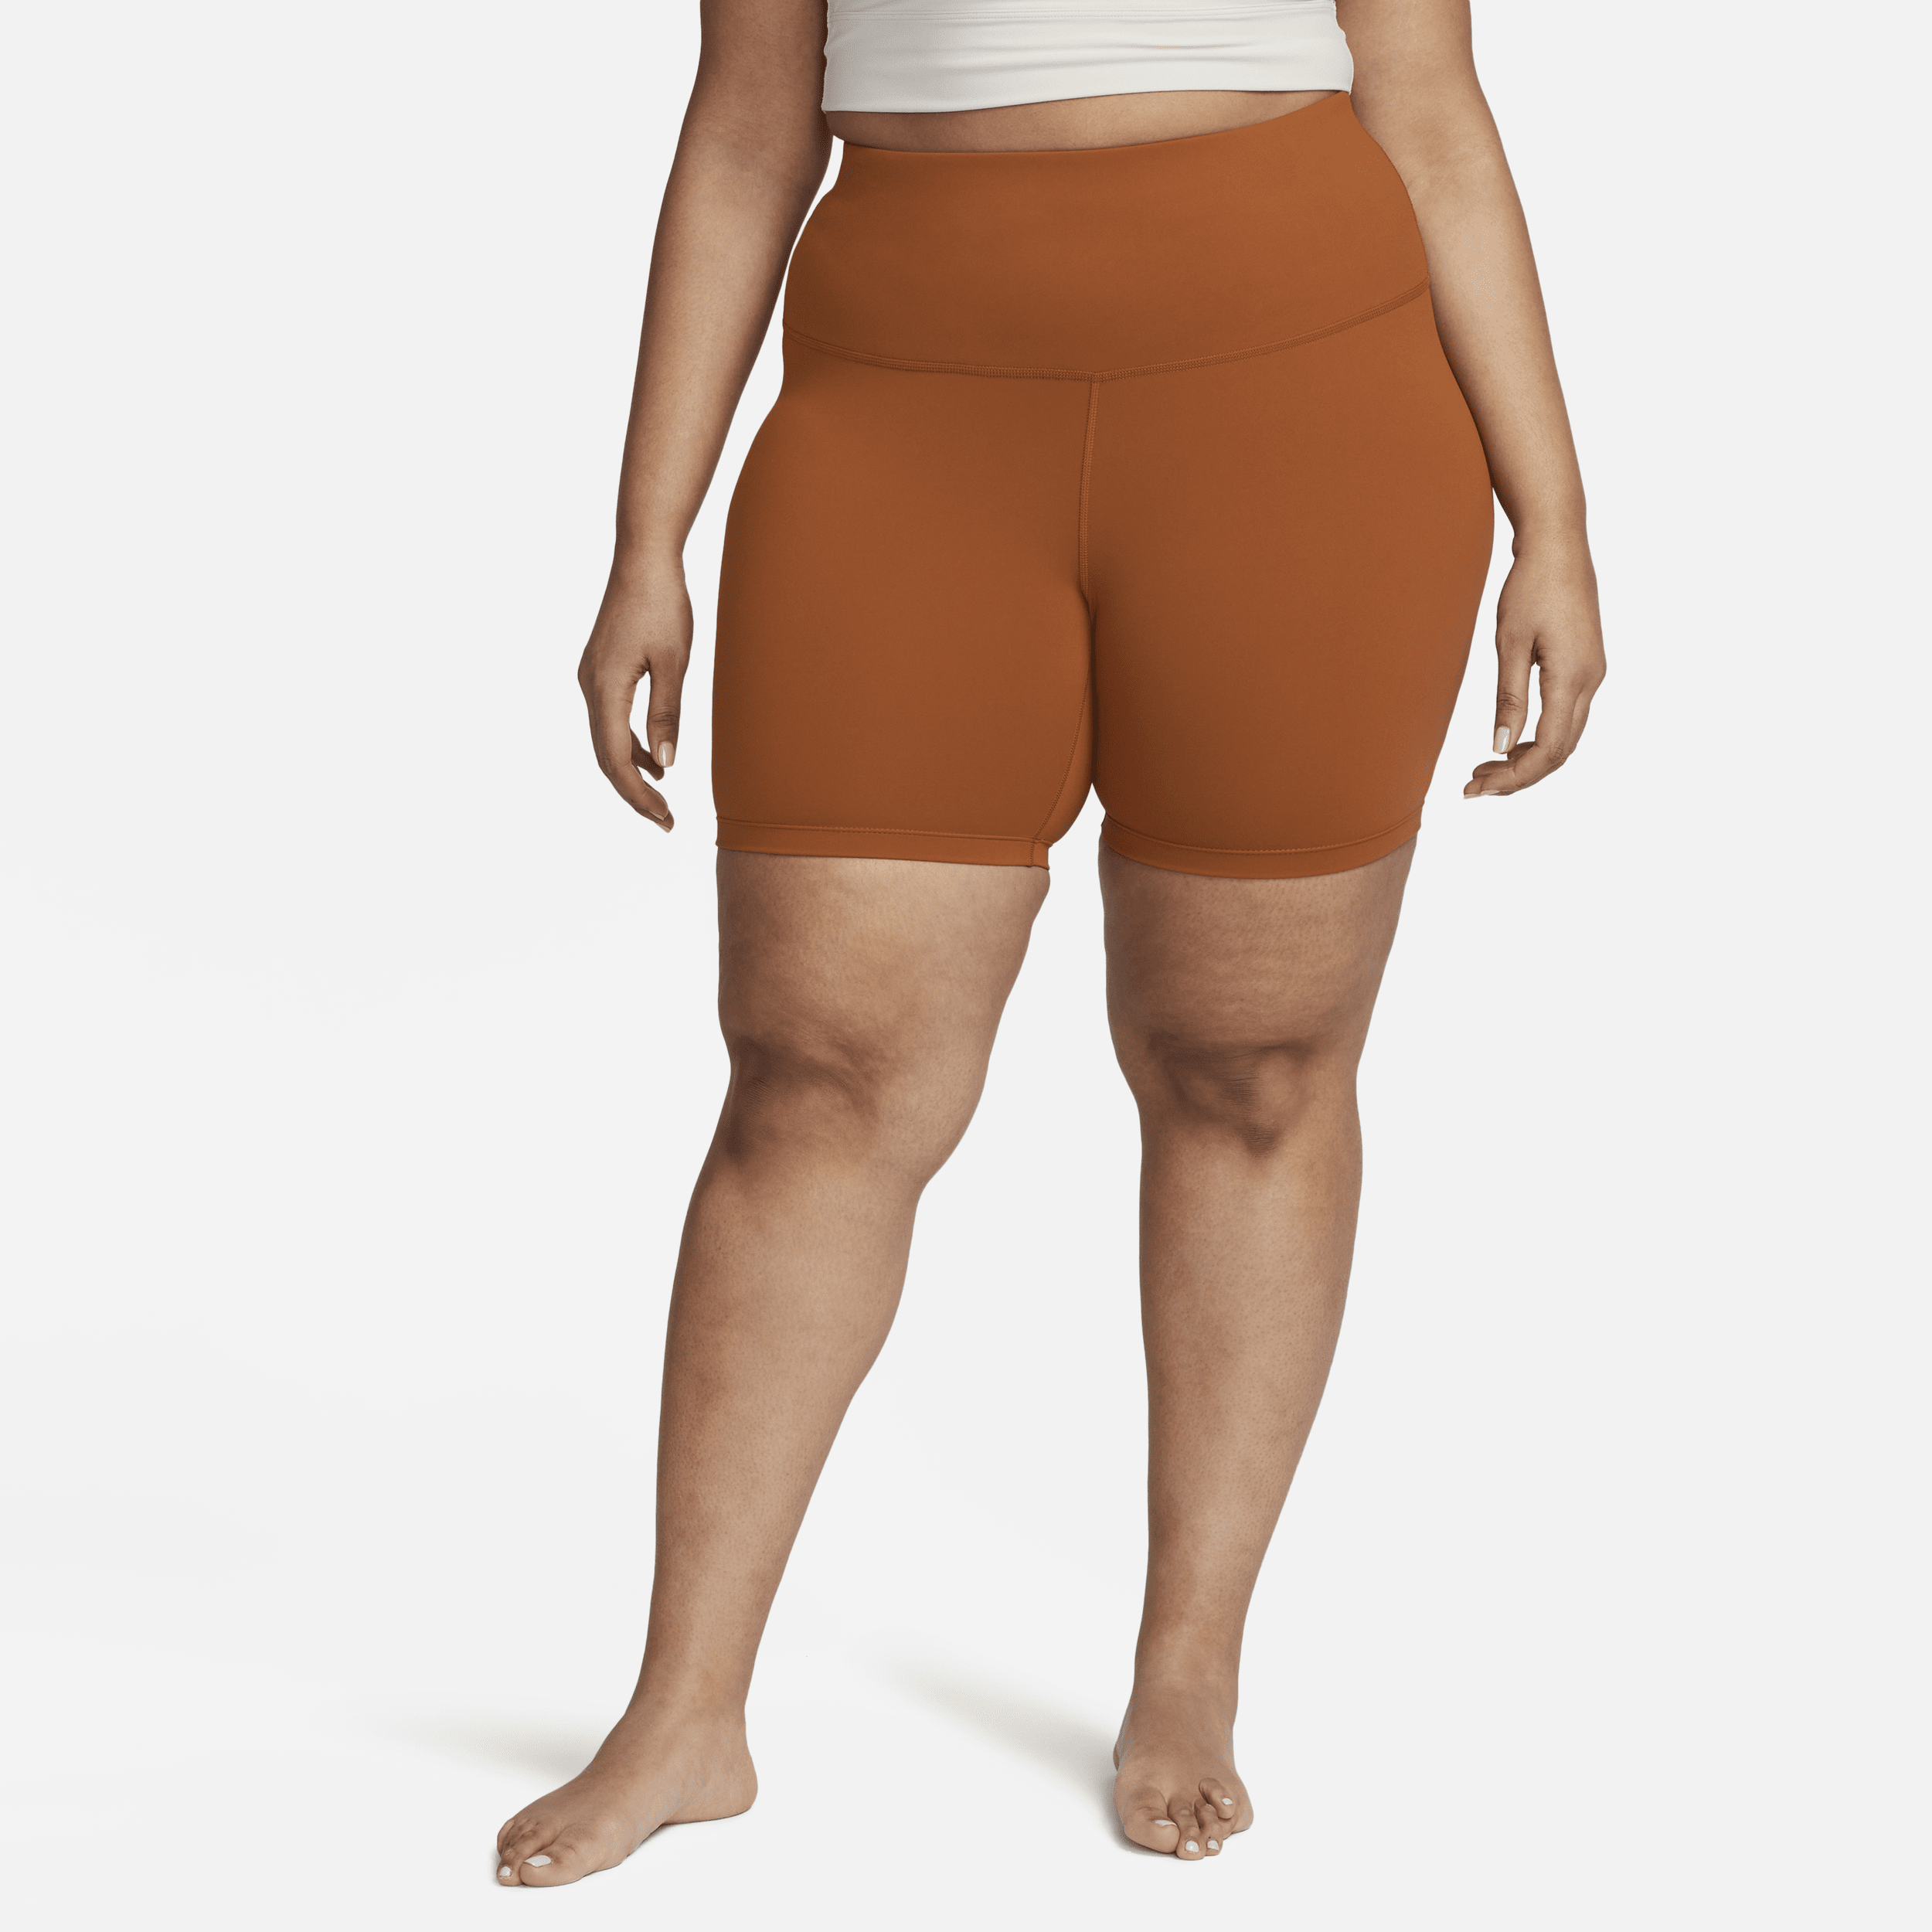 Nike Yoga Women's High-Waisted 7 Shorts (Plus Size)